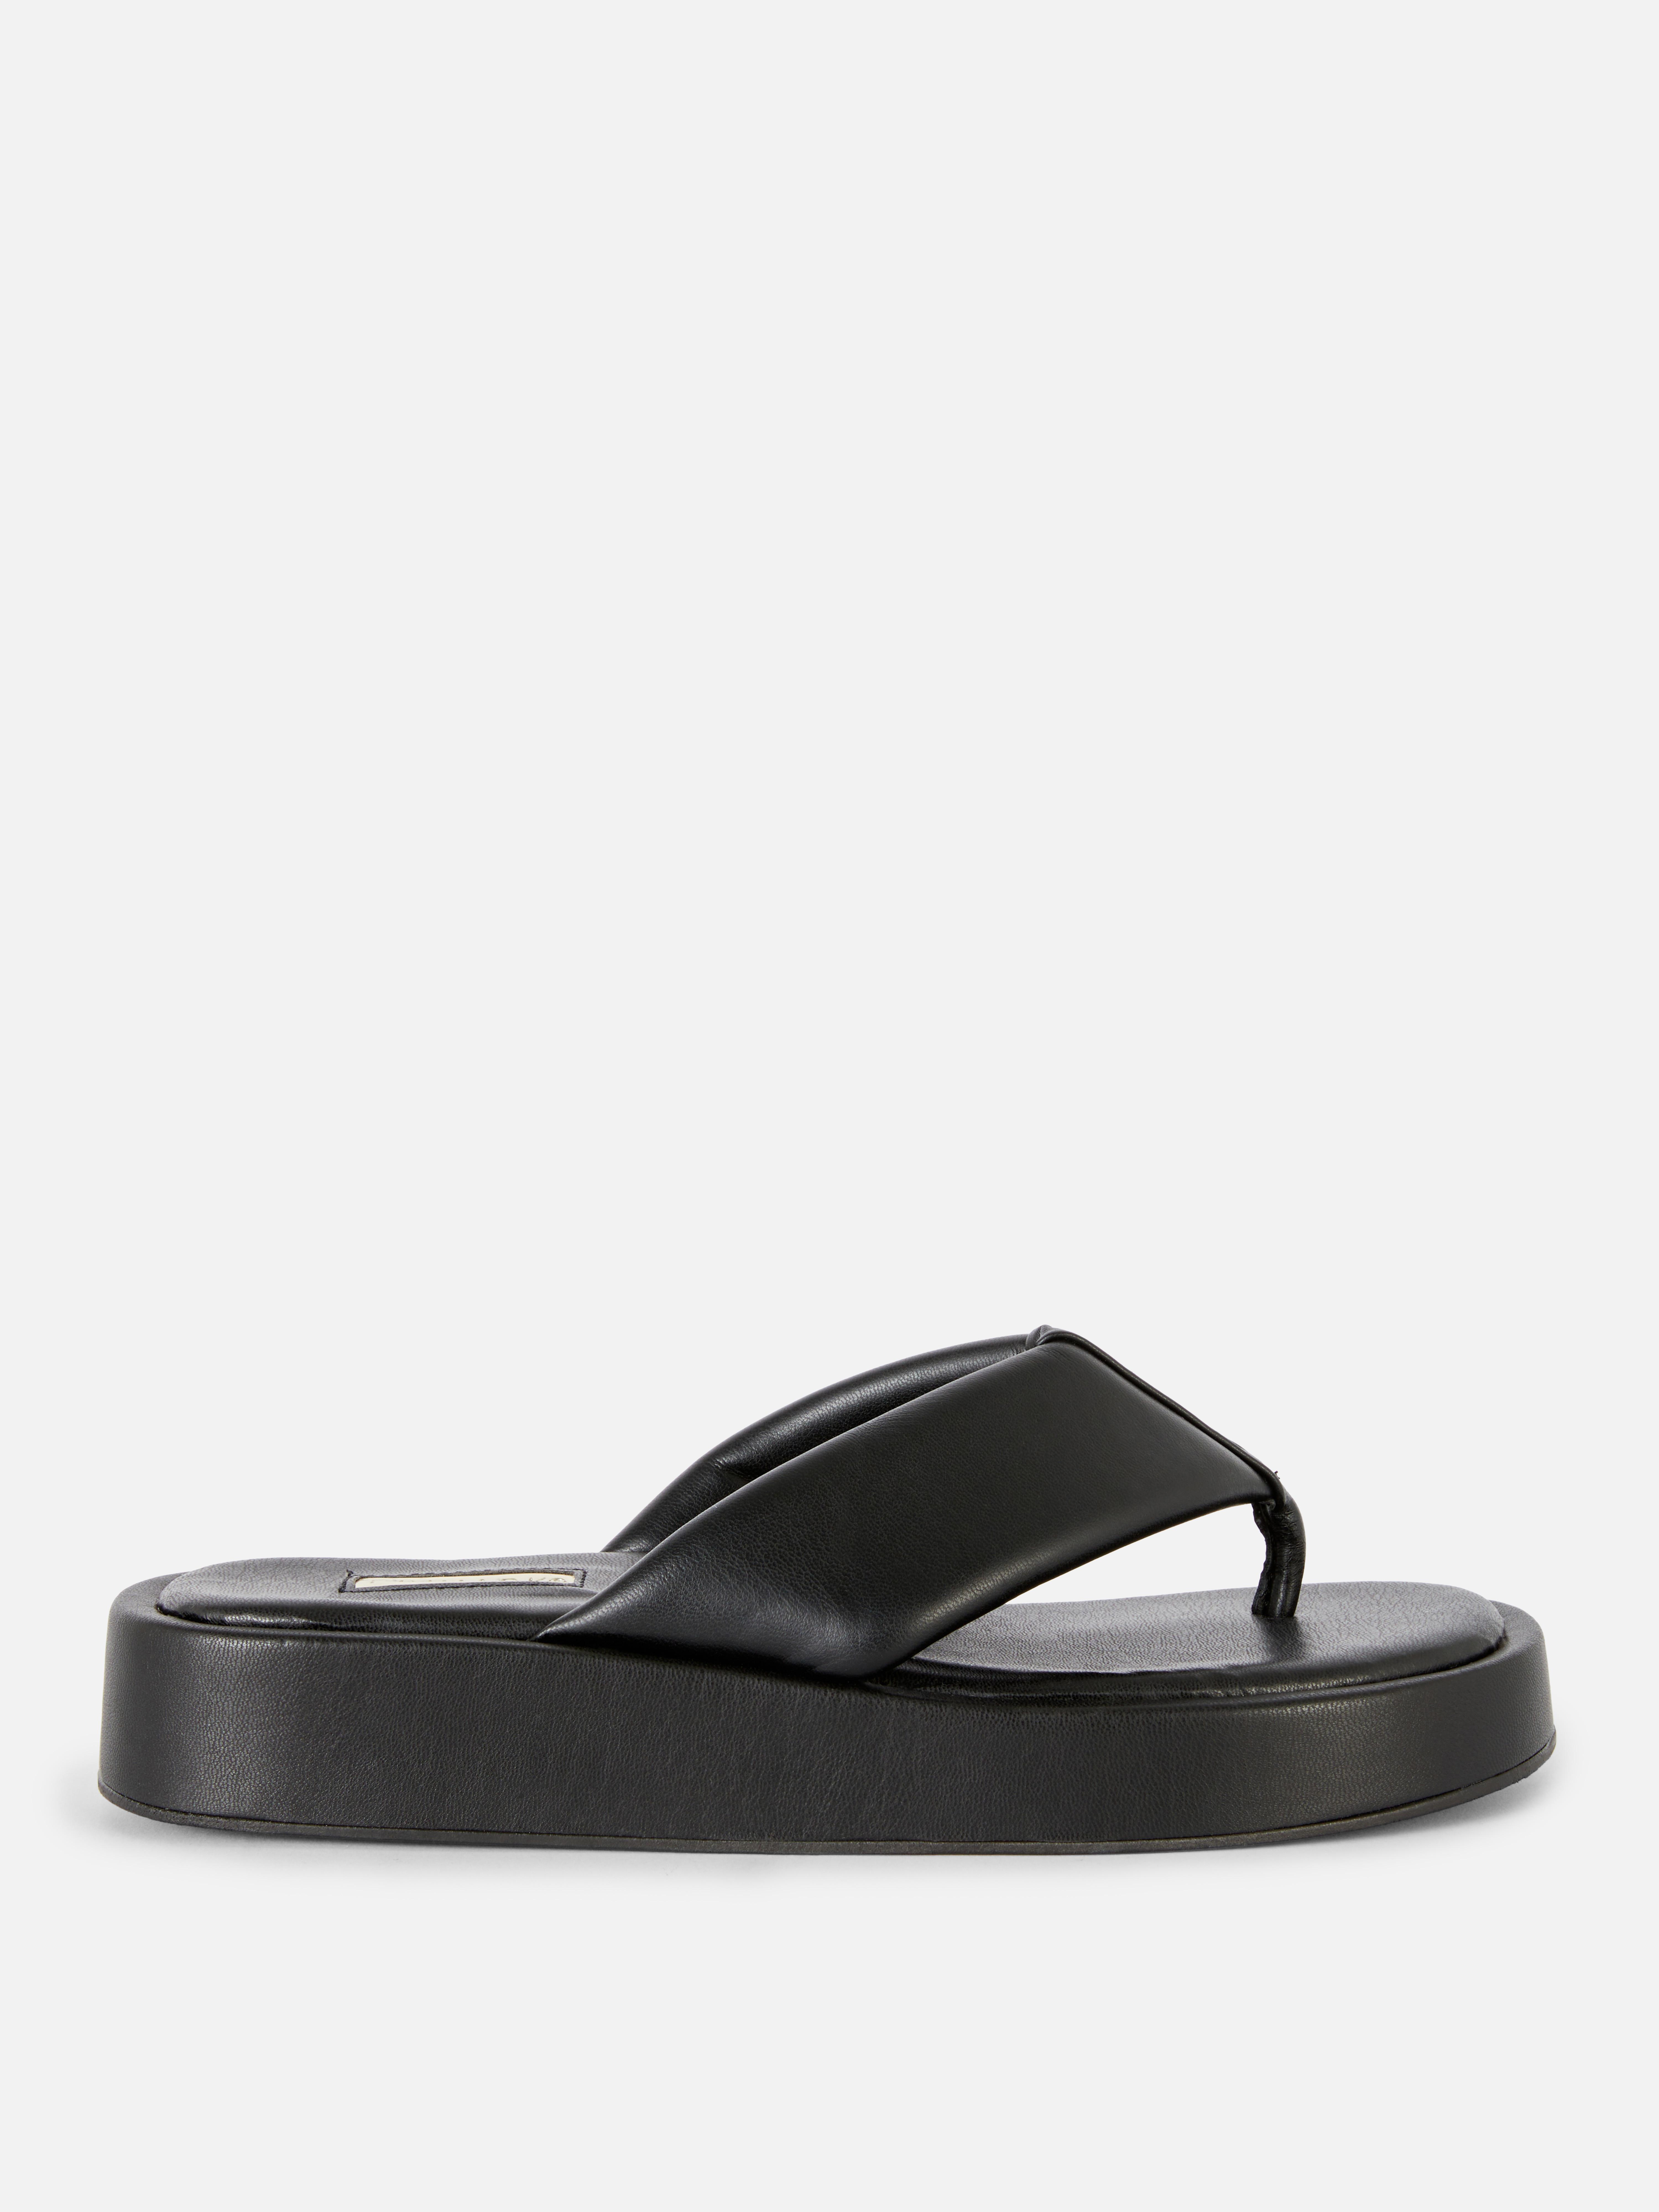 Flatform Flip Flop Sandals